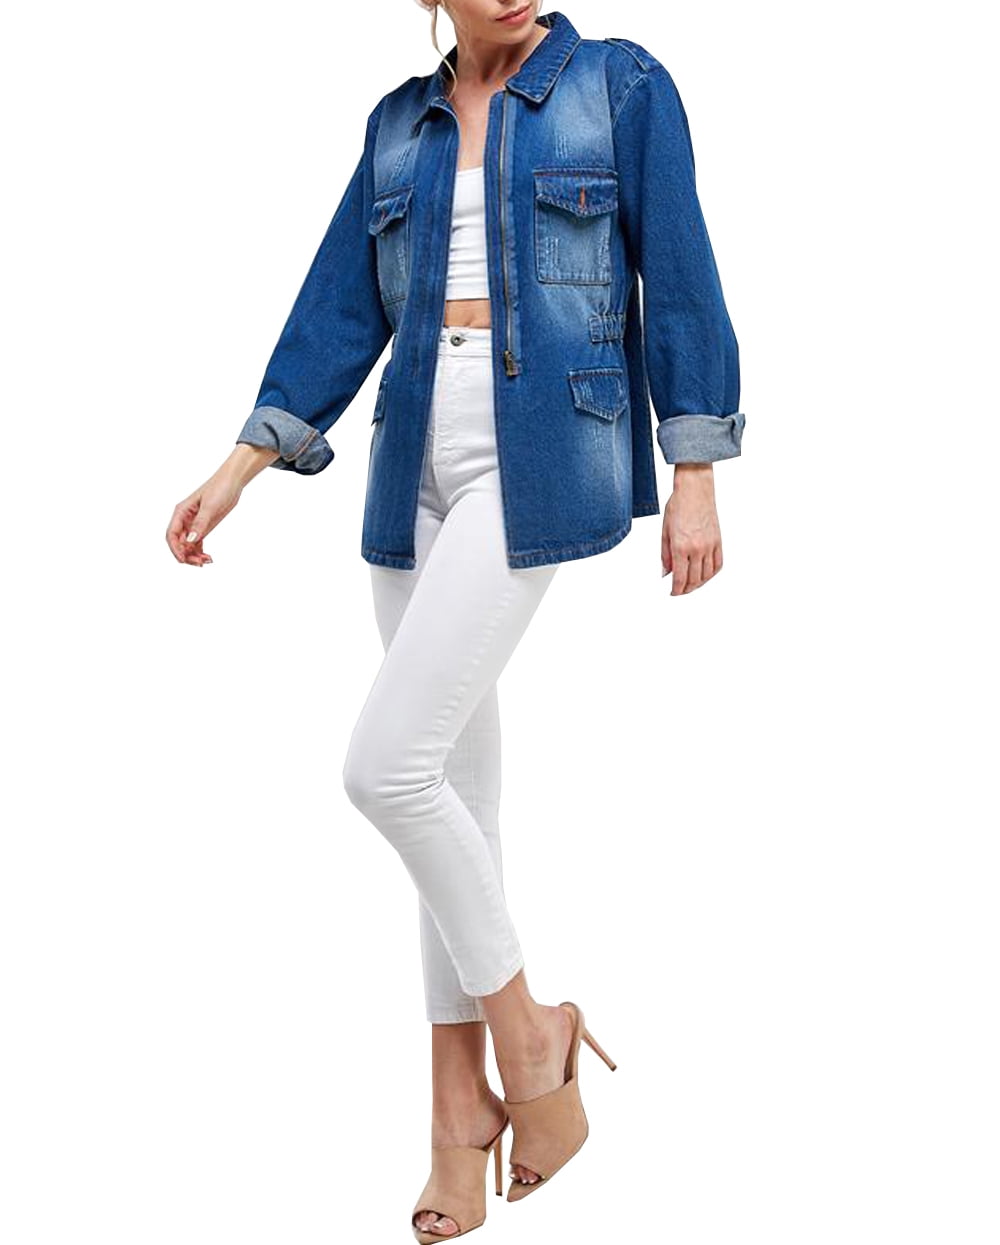 Half sleeve jeans jacket | Jackets, Half sleeves, Jean jacket